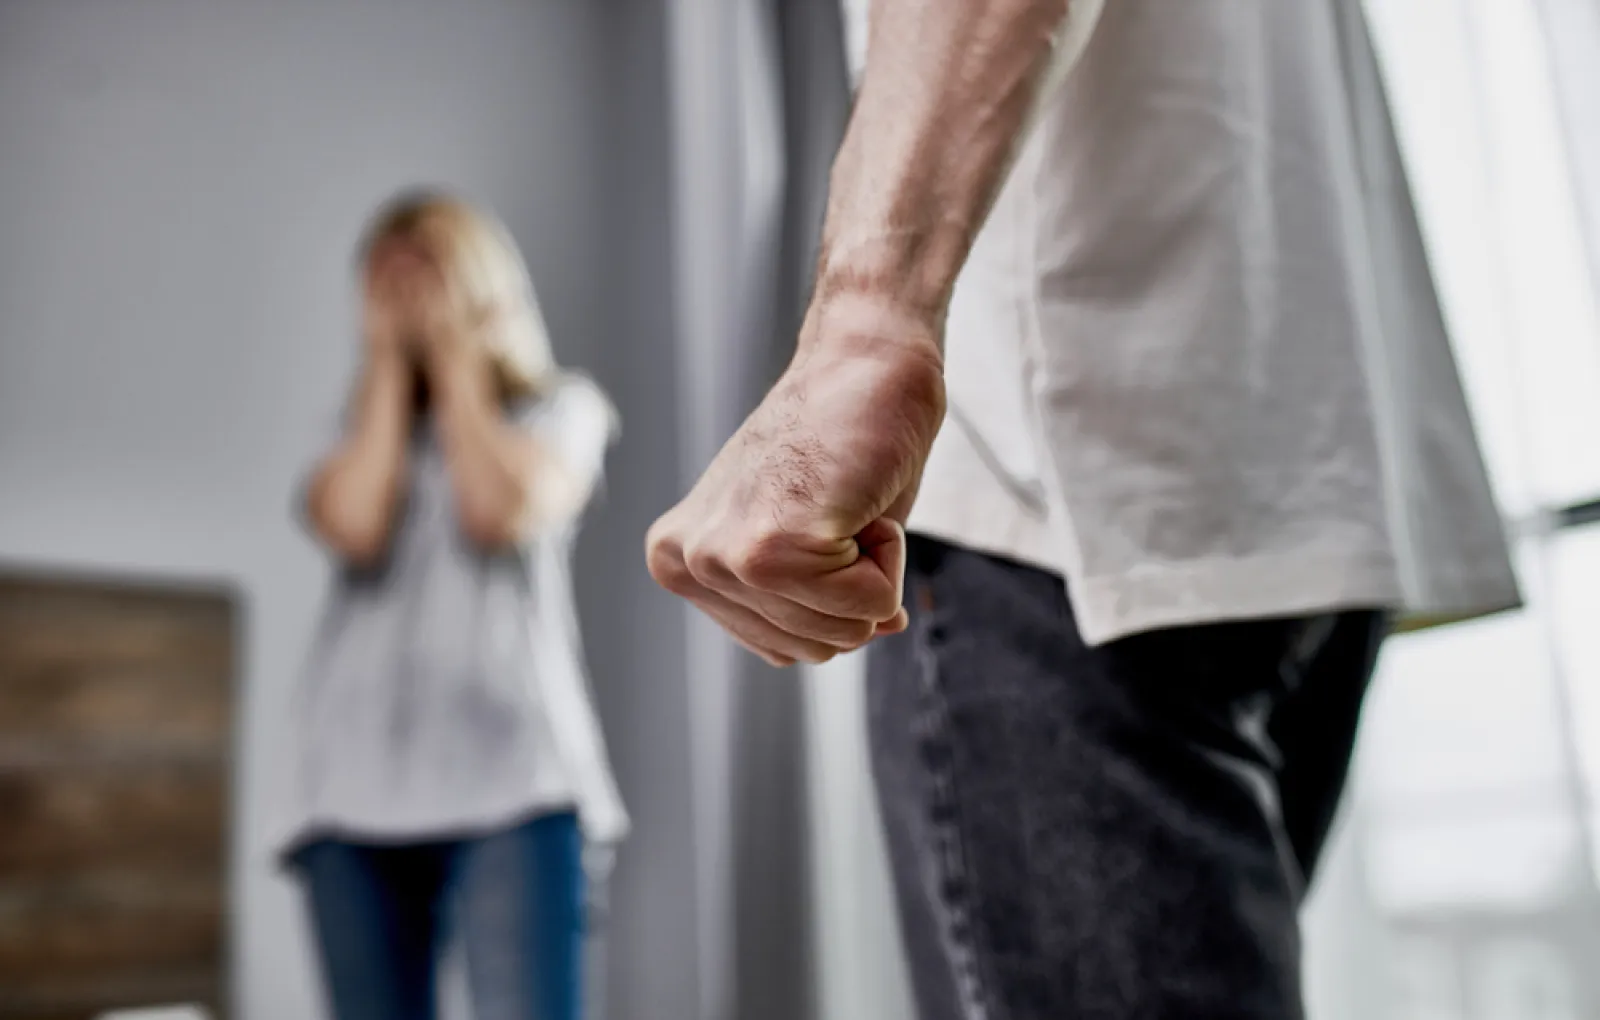 Песков: вызывающих беспокойство тенденций с домашним насилием в РФ нет